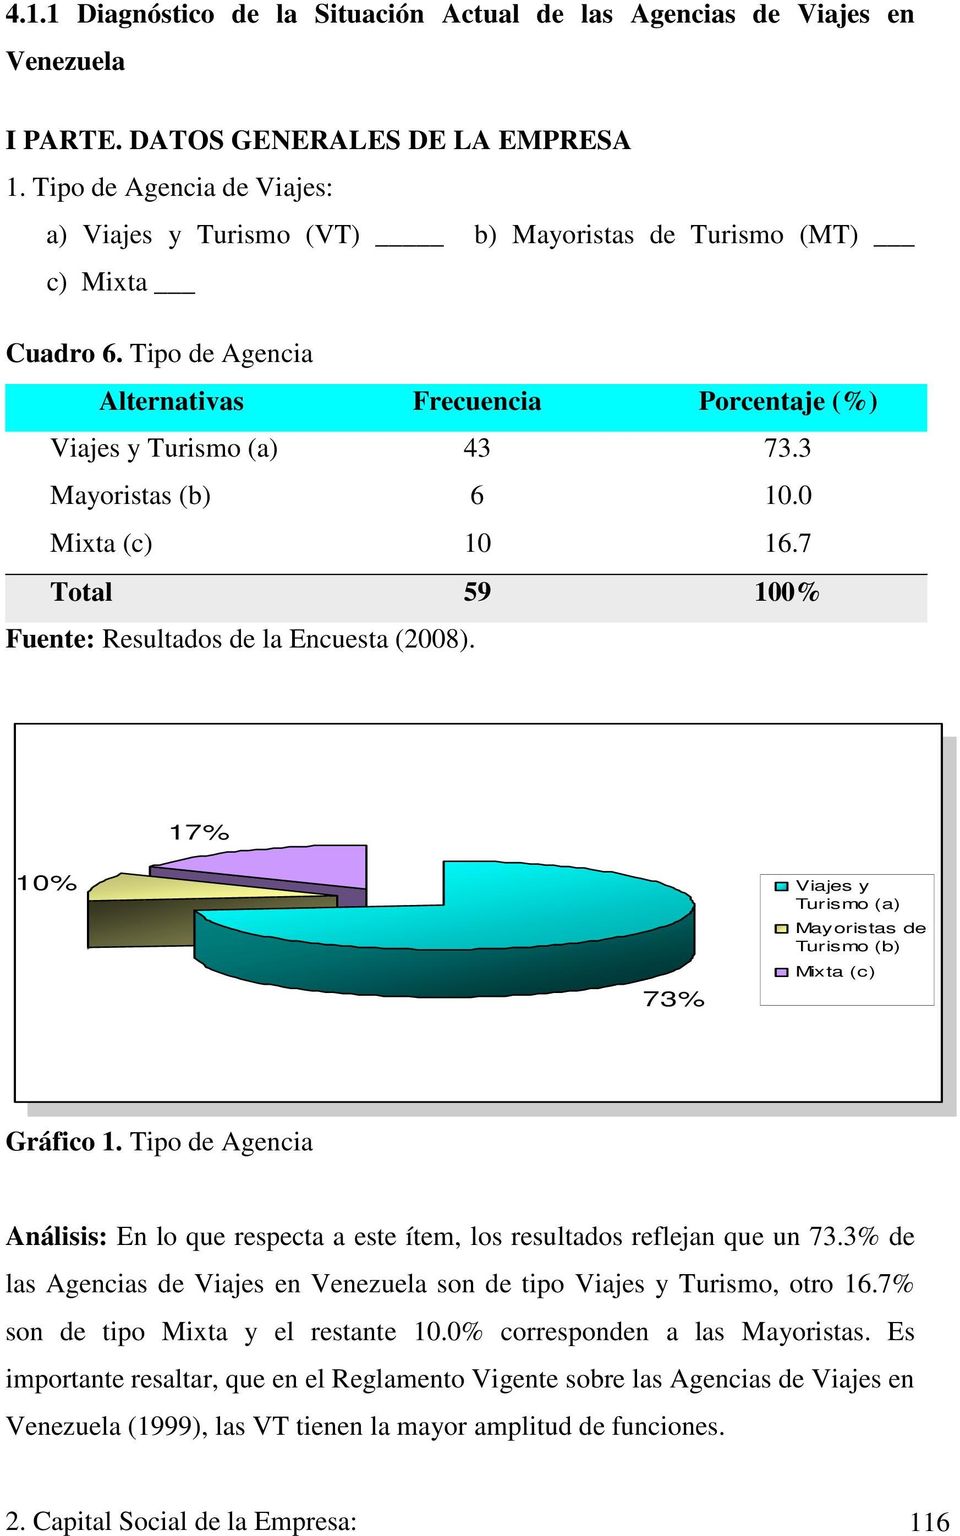 7 1 1 17% 17% 73% 73% Viajes y Turismo Viajes y(a) Turismo (a) Mayoristas de Turismo Mayoristas (b) de Turismo (b) Mixta (c) Mixta (c) Gráfico 1.